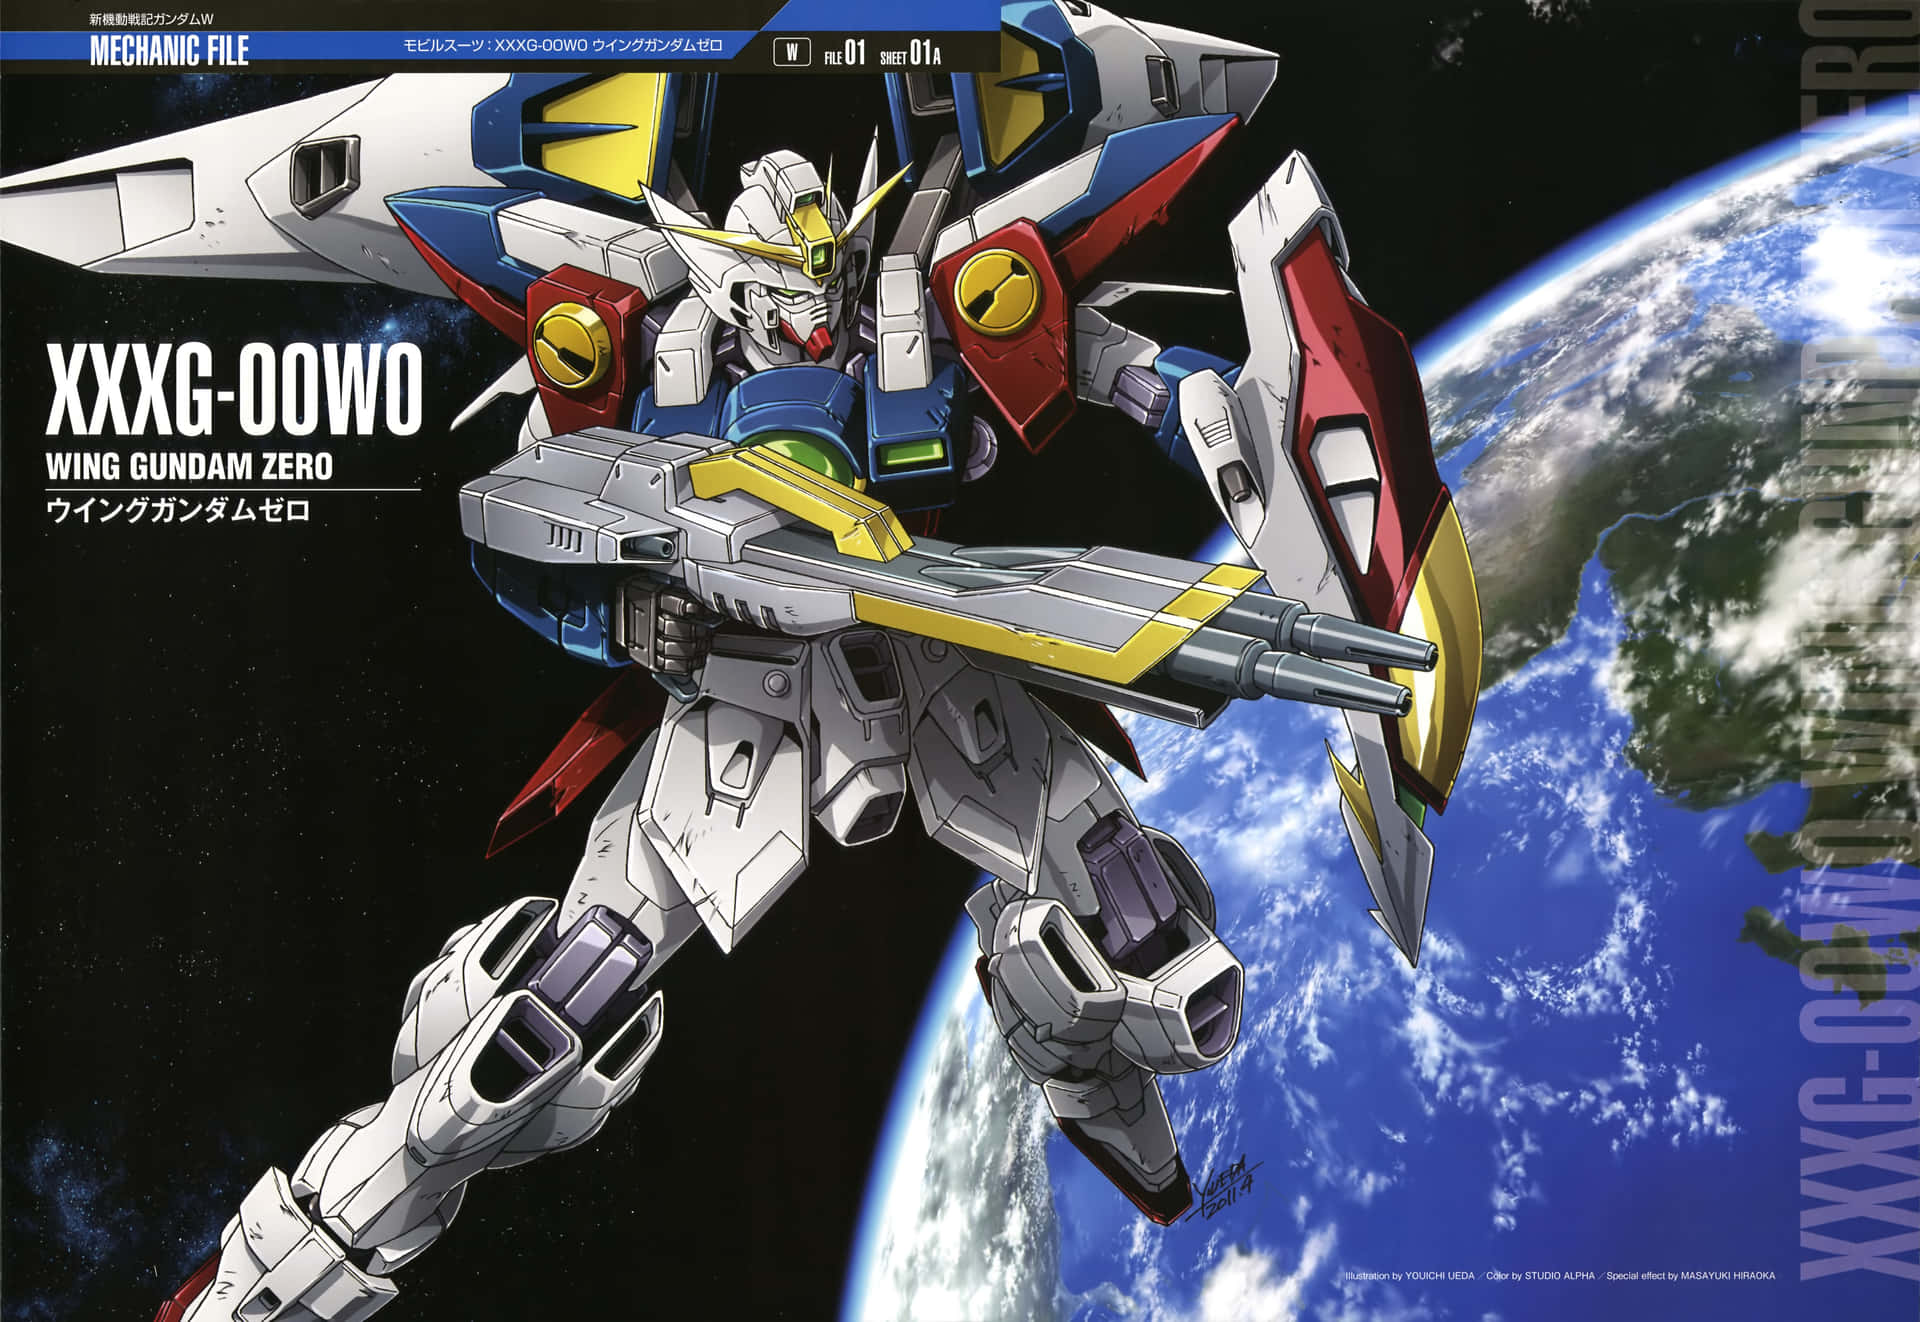 Enstærk Mobile Suit Pilot Kæmper I Hit Anime-serien Gundam Wing. Wallpaper